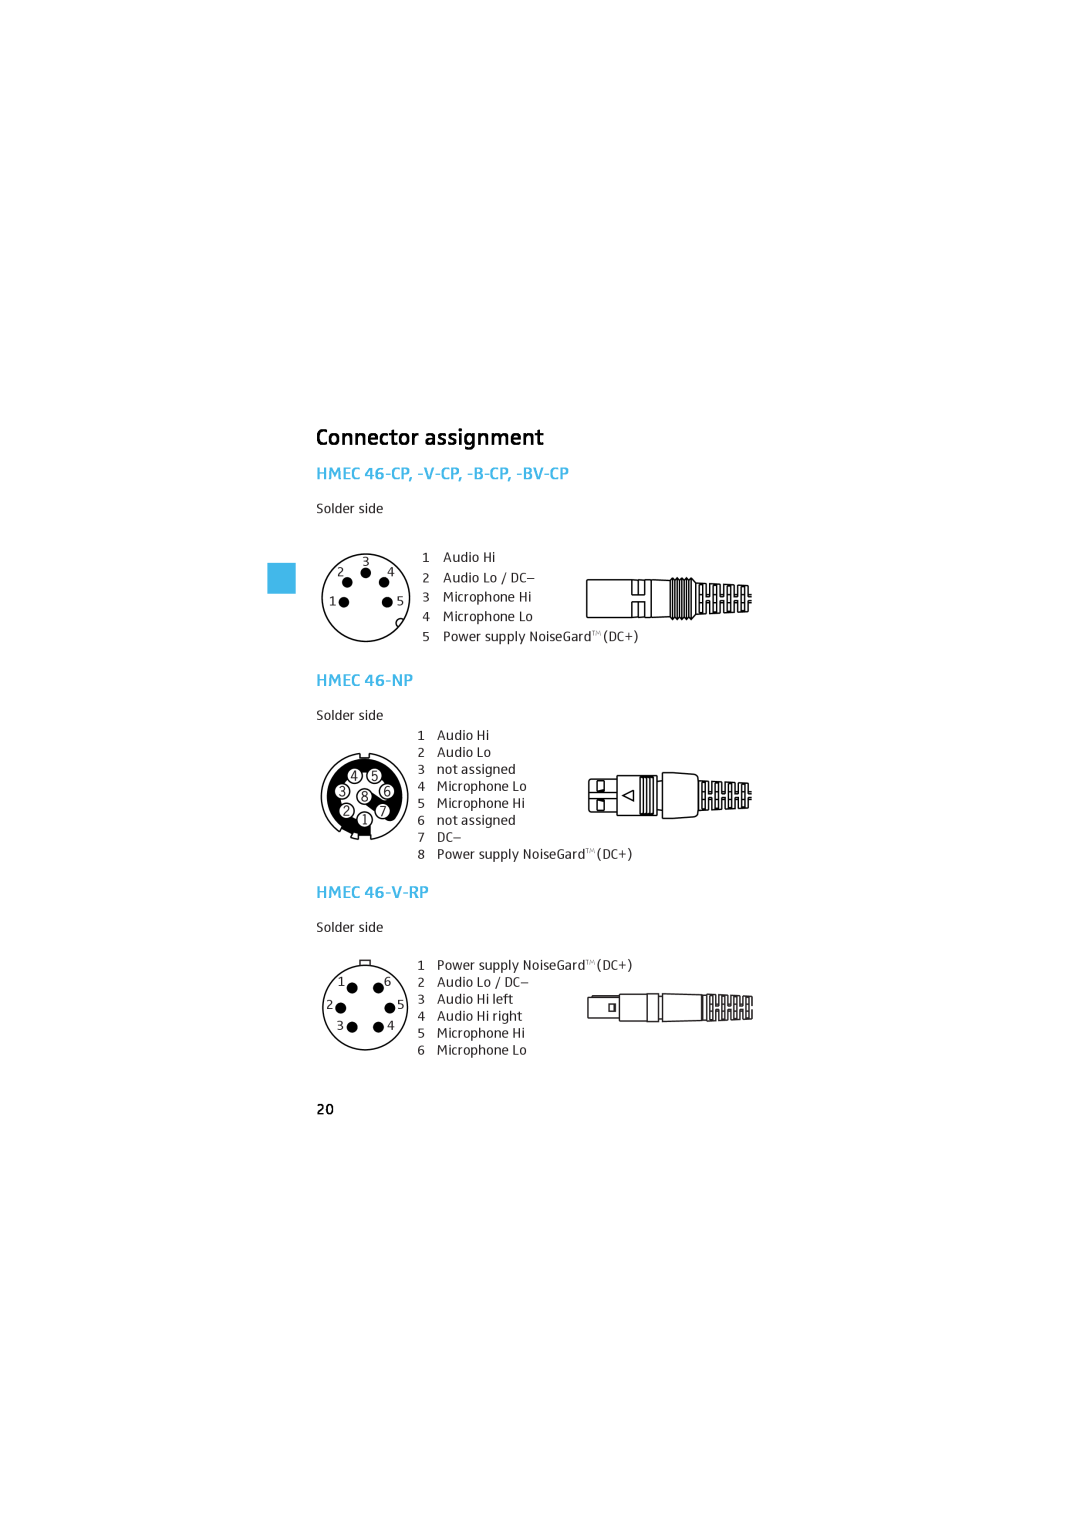 Sennheiser manual Connector assignment, HMEC 46-CP, -V-CP, -B-CP, -BV-CP, HMEC 46-NP, HMEC 46-V-RP 